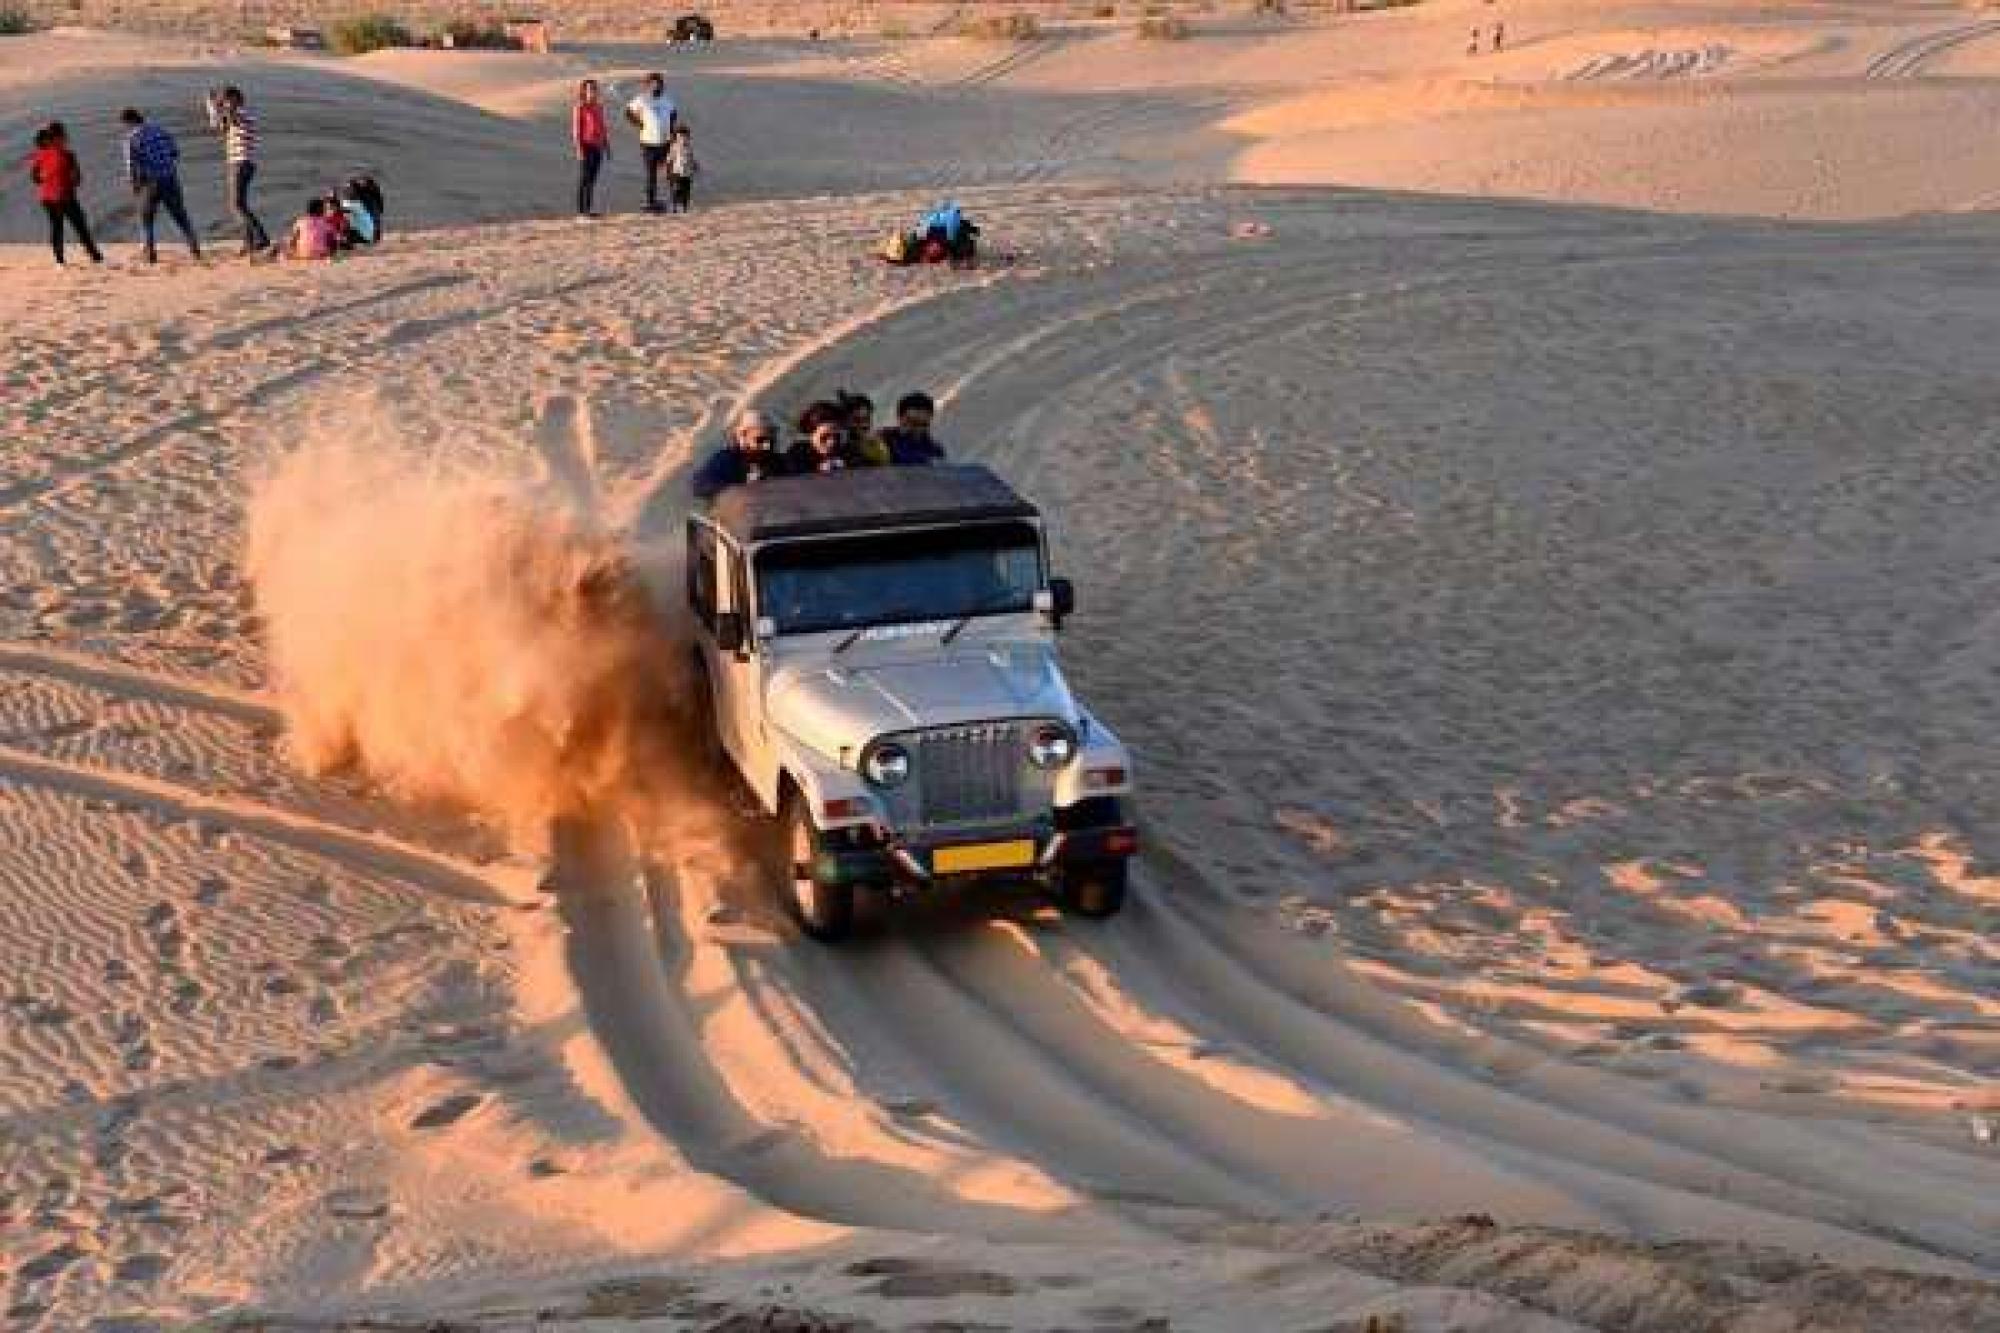 Jeep Safari in Dunes of Rajasthan